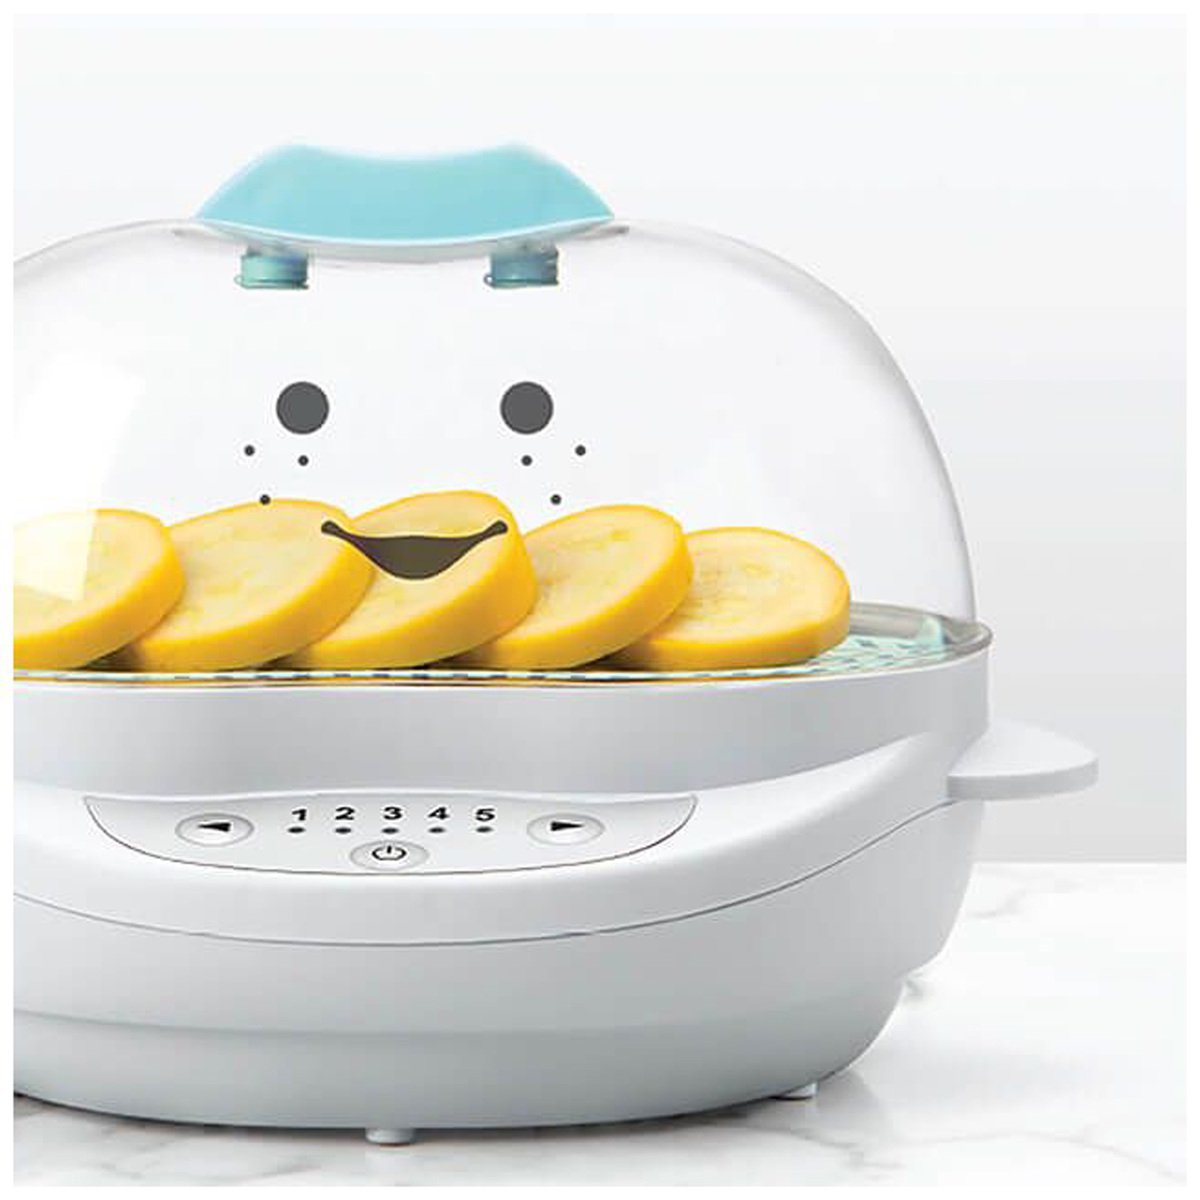 نيوتري بوليت جهاز طبخ بالبخار للأطفال، أبيض/أزرق، BSR-0812